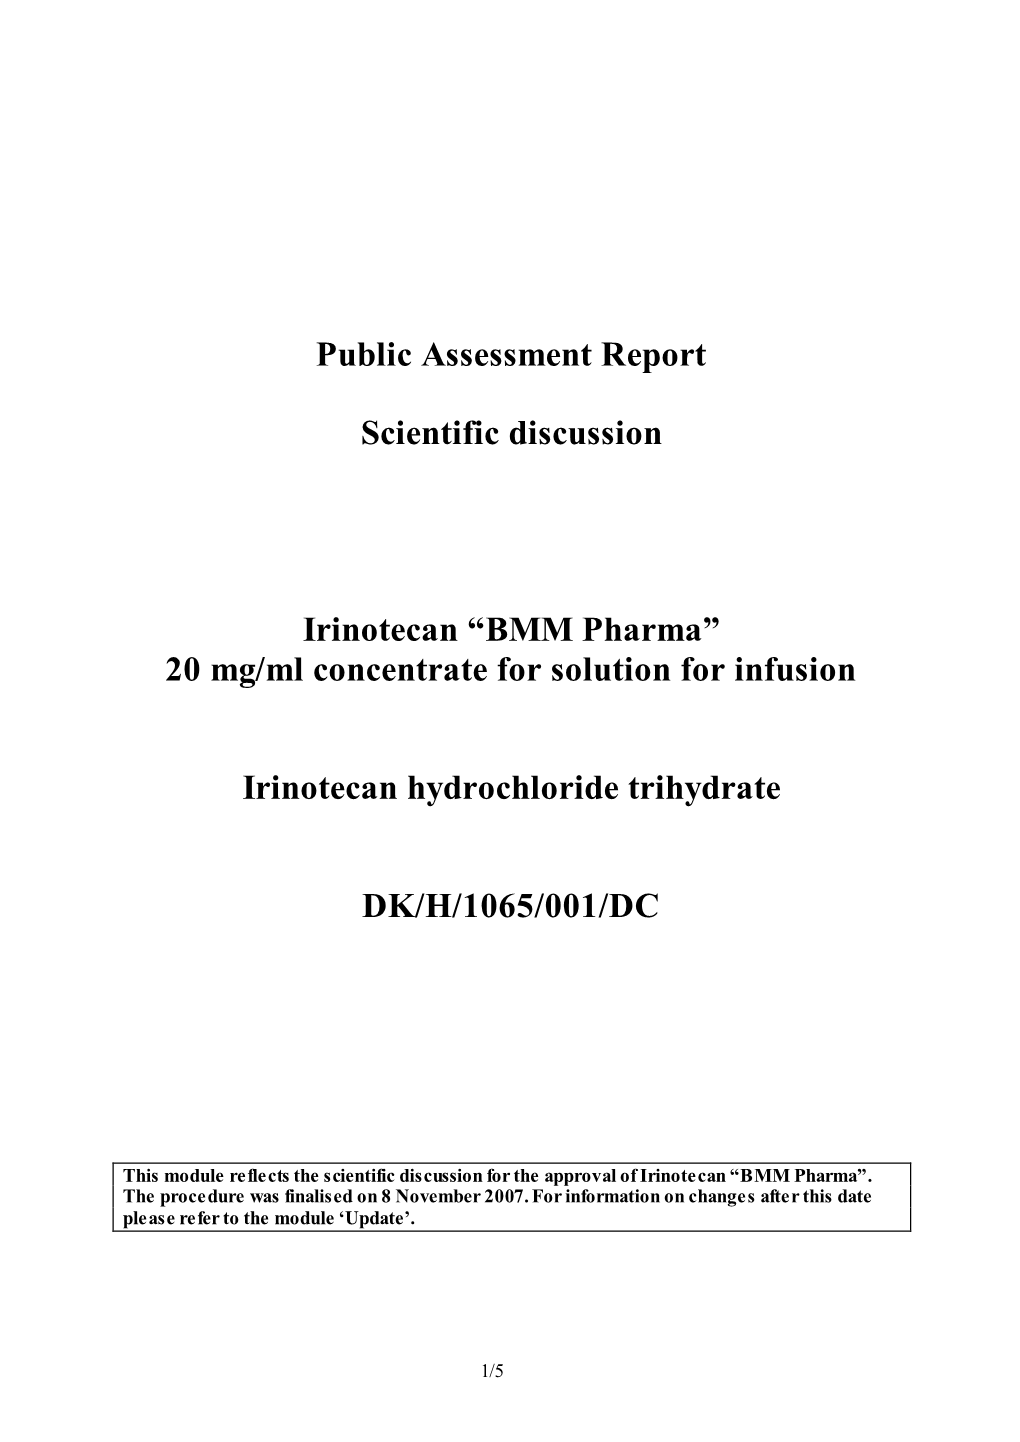 Public Assessment Report Scientific Discussion Irinotecan “BMM Pharma”